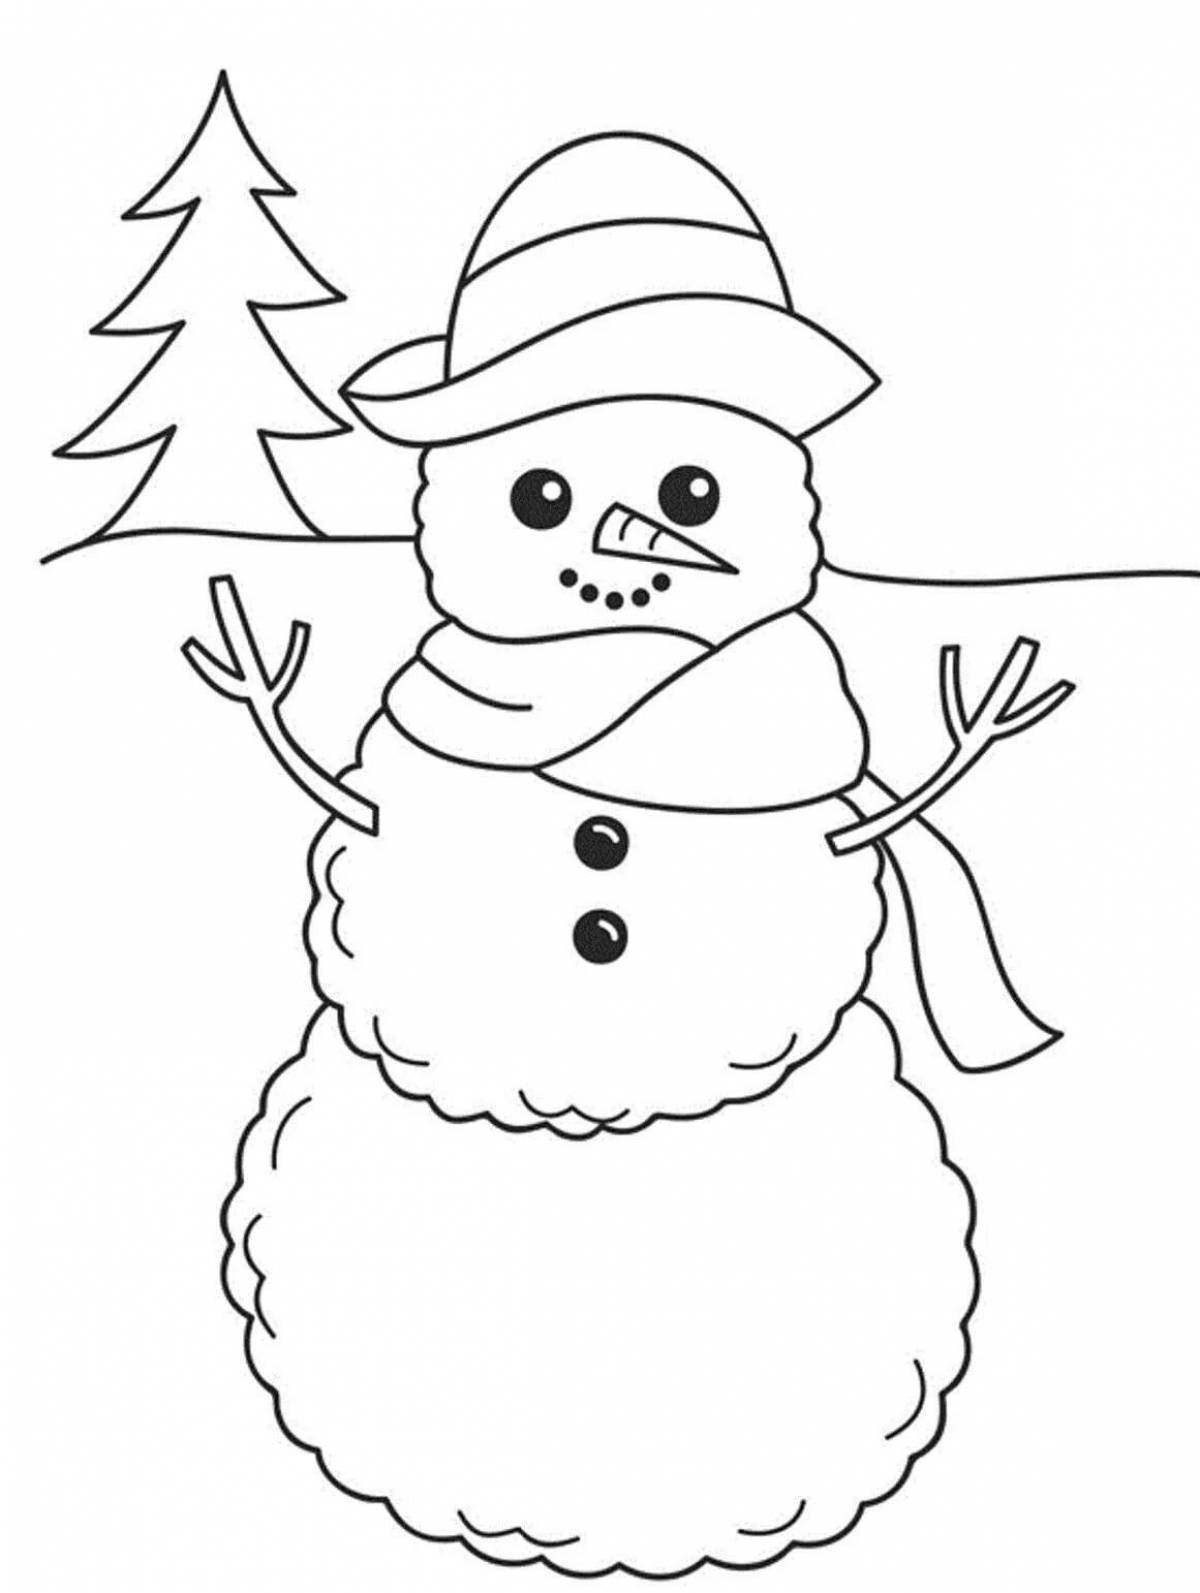 Волшебная раскраска снеговик для детей 6-7 лет